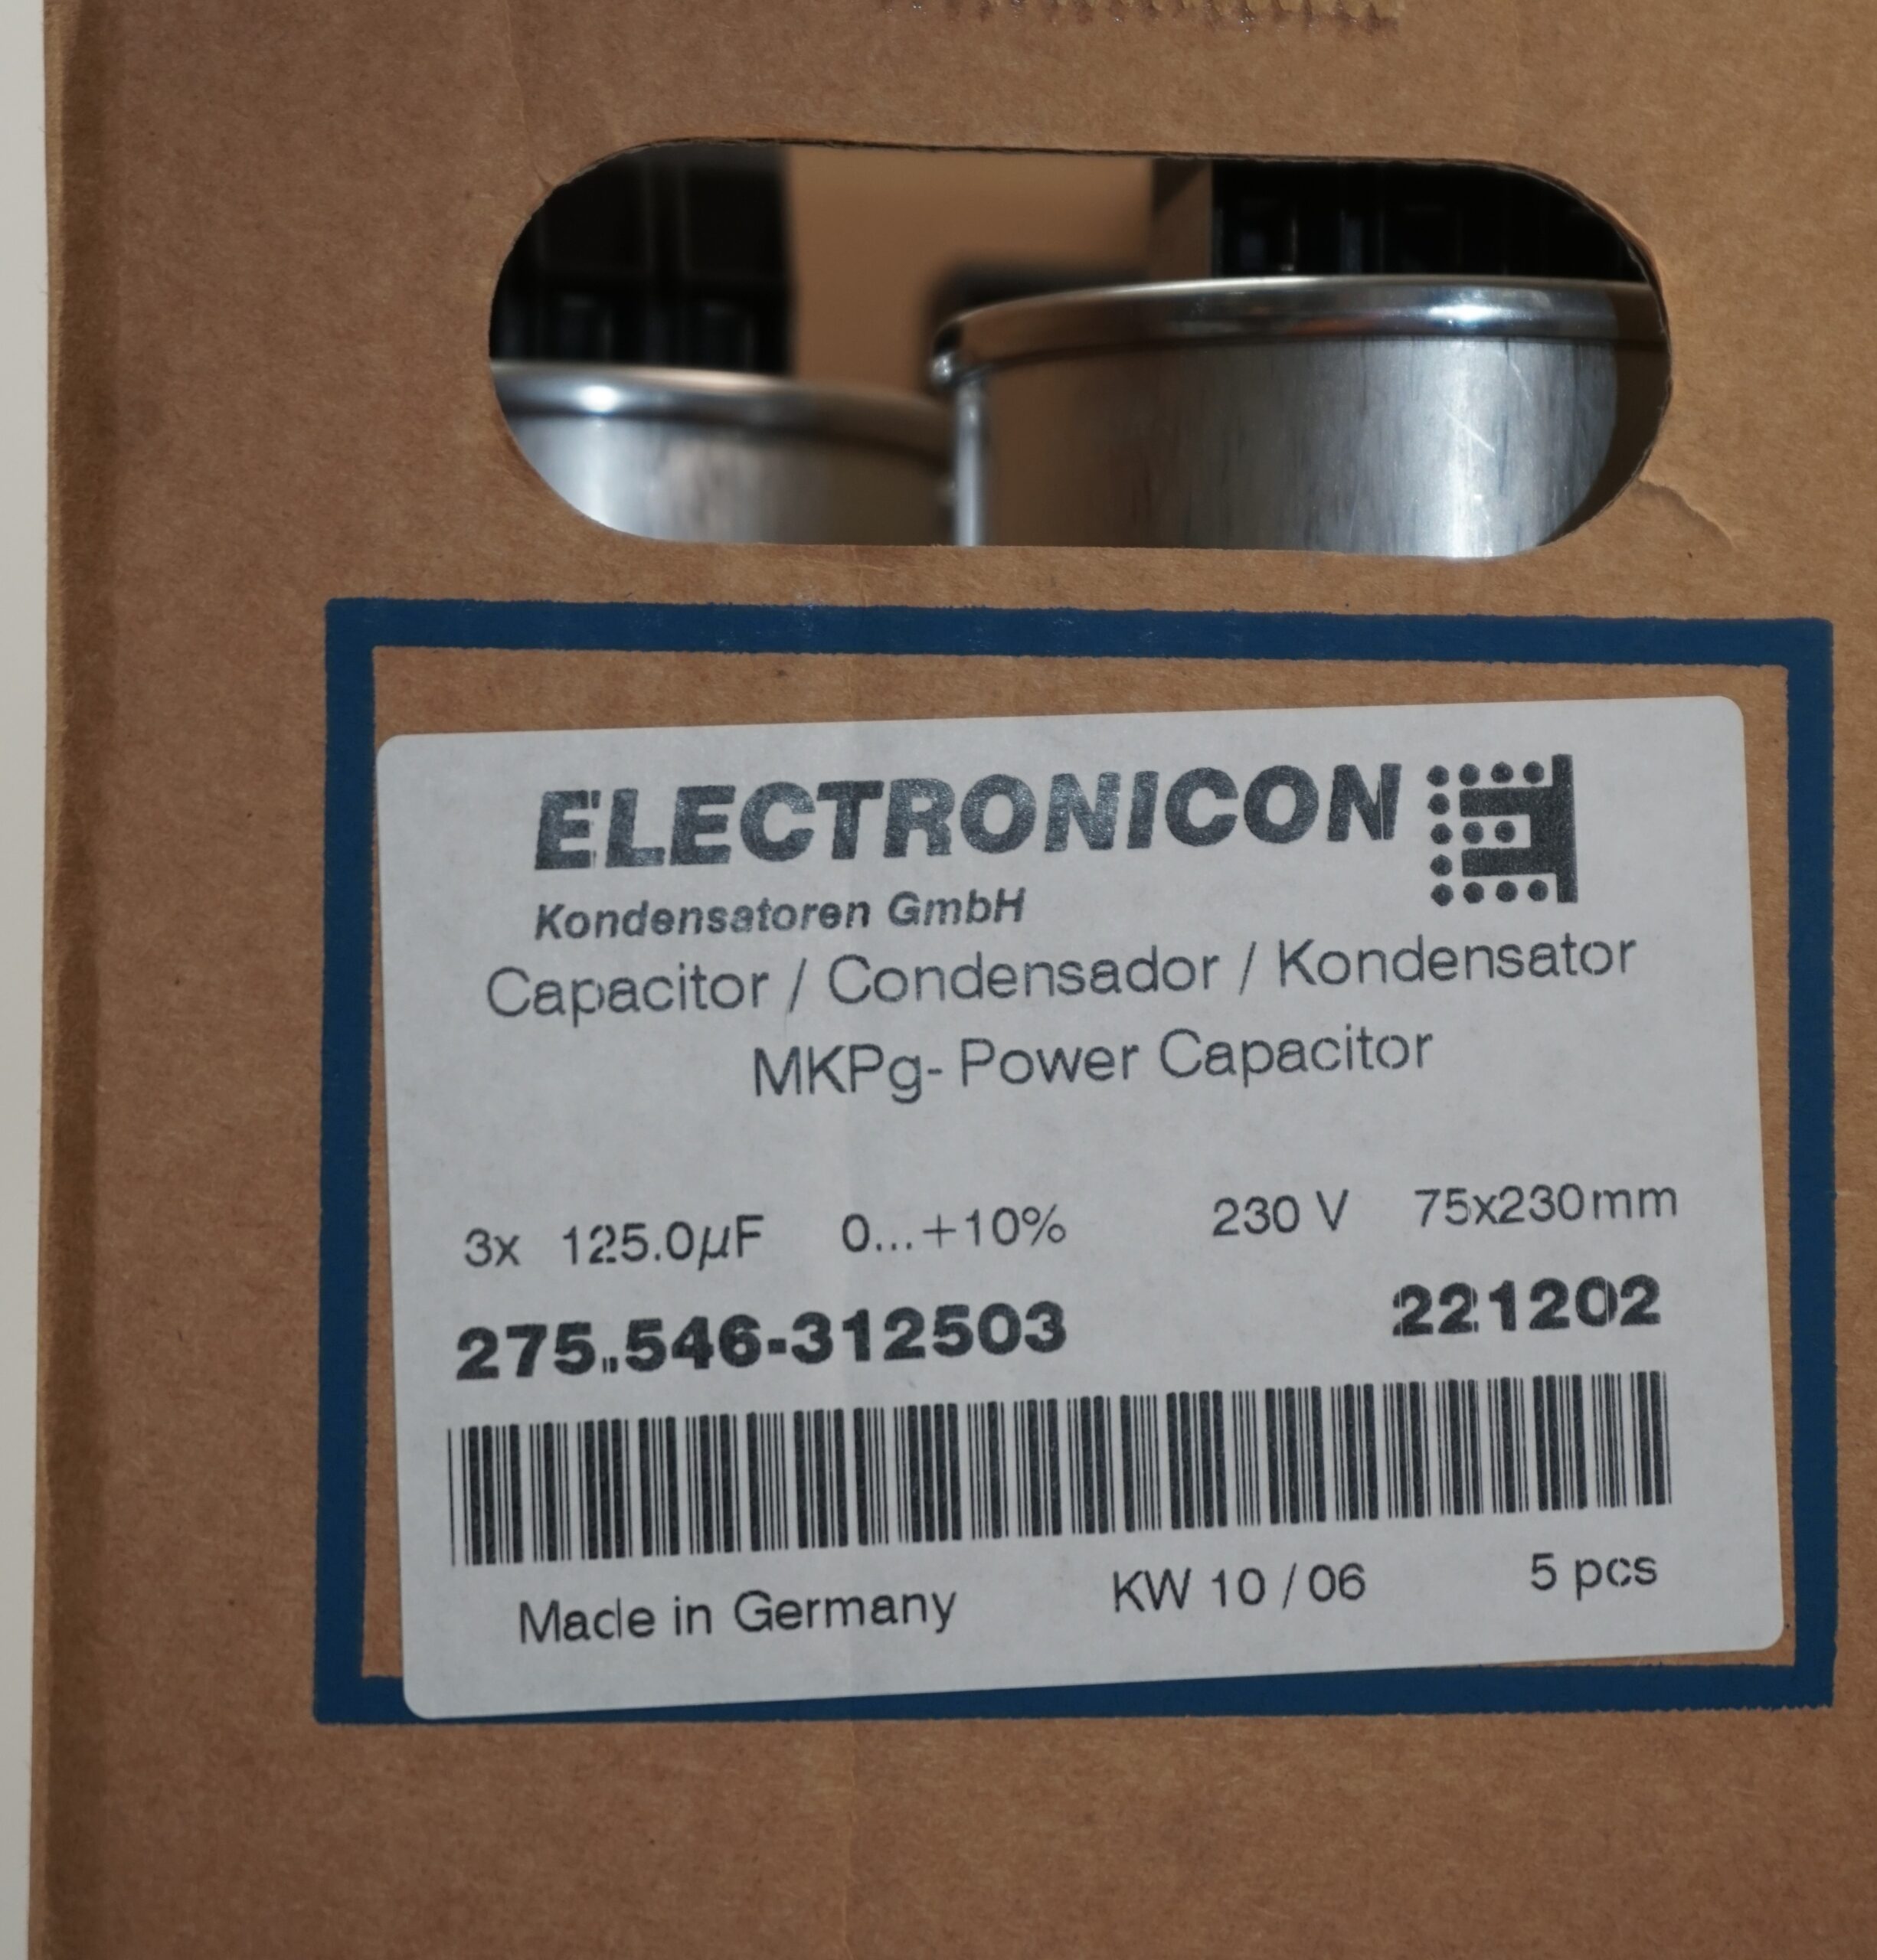 DC-Capacitors - ELECTRONICON Kondensatoren GmbH